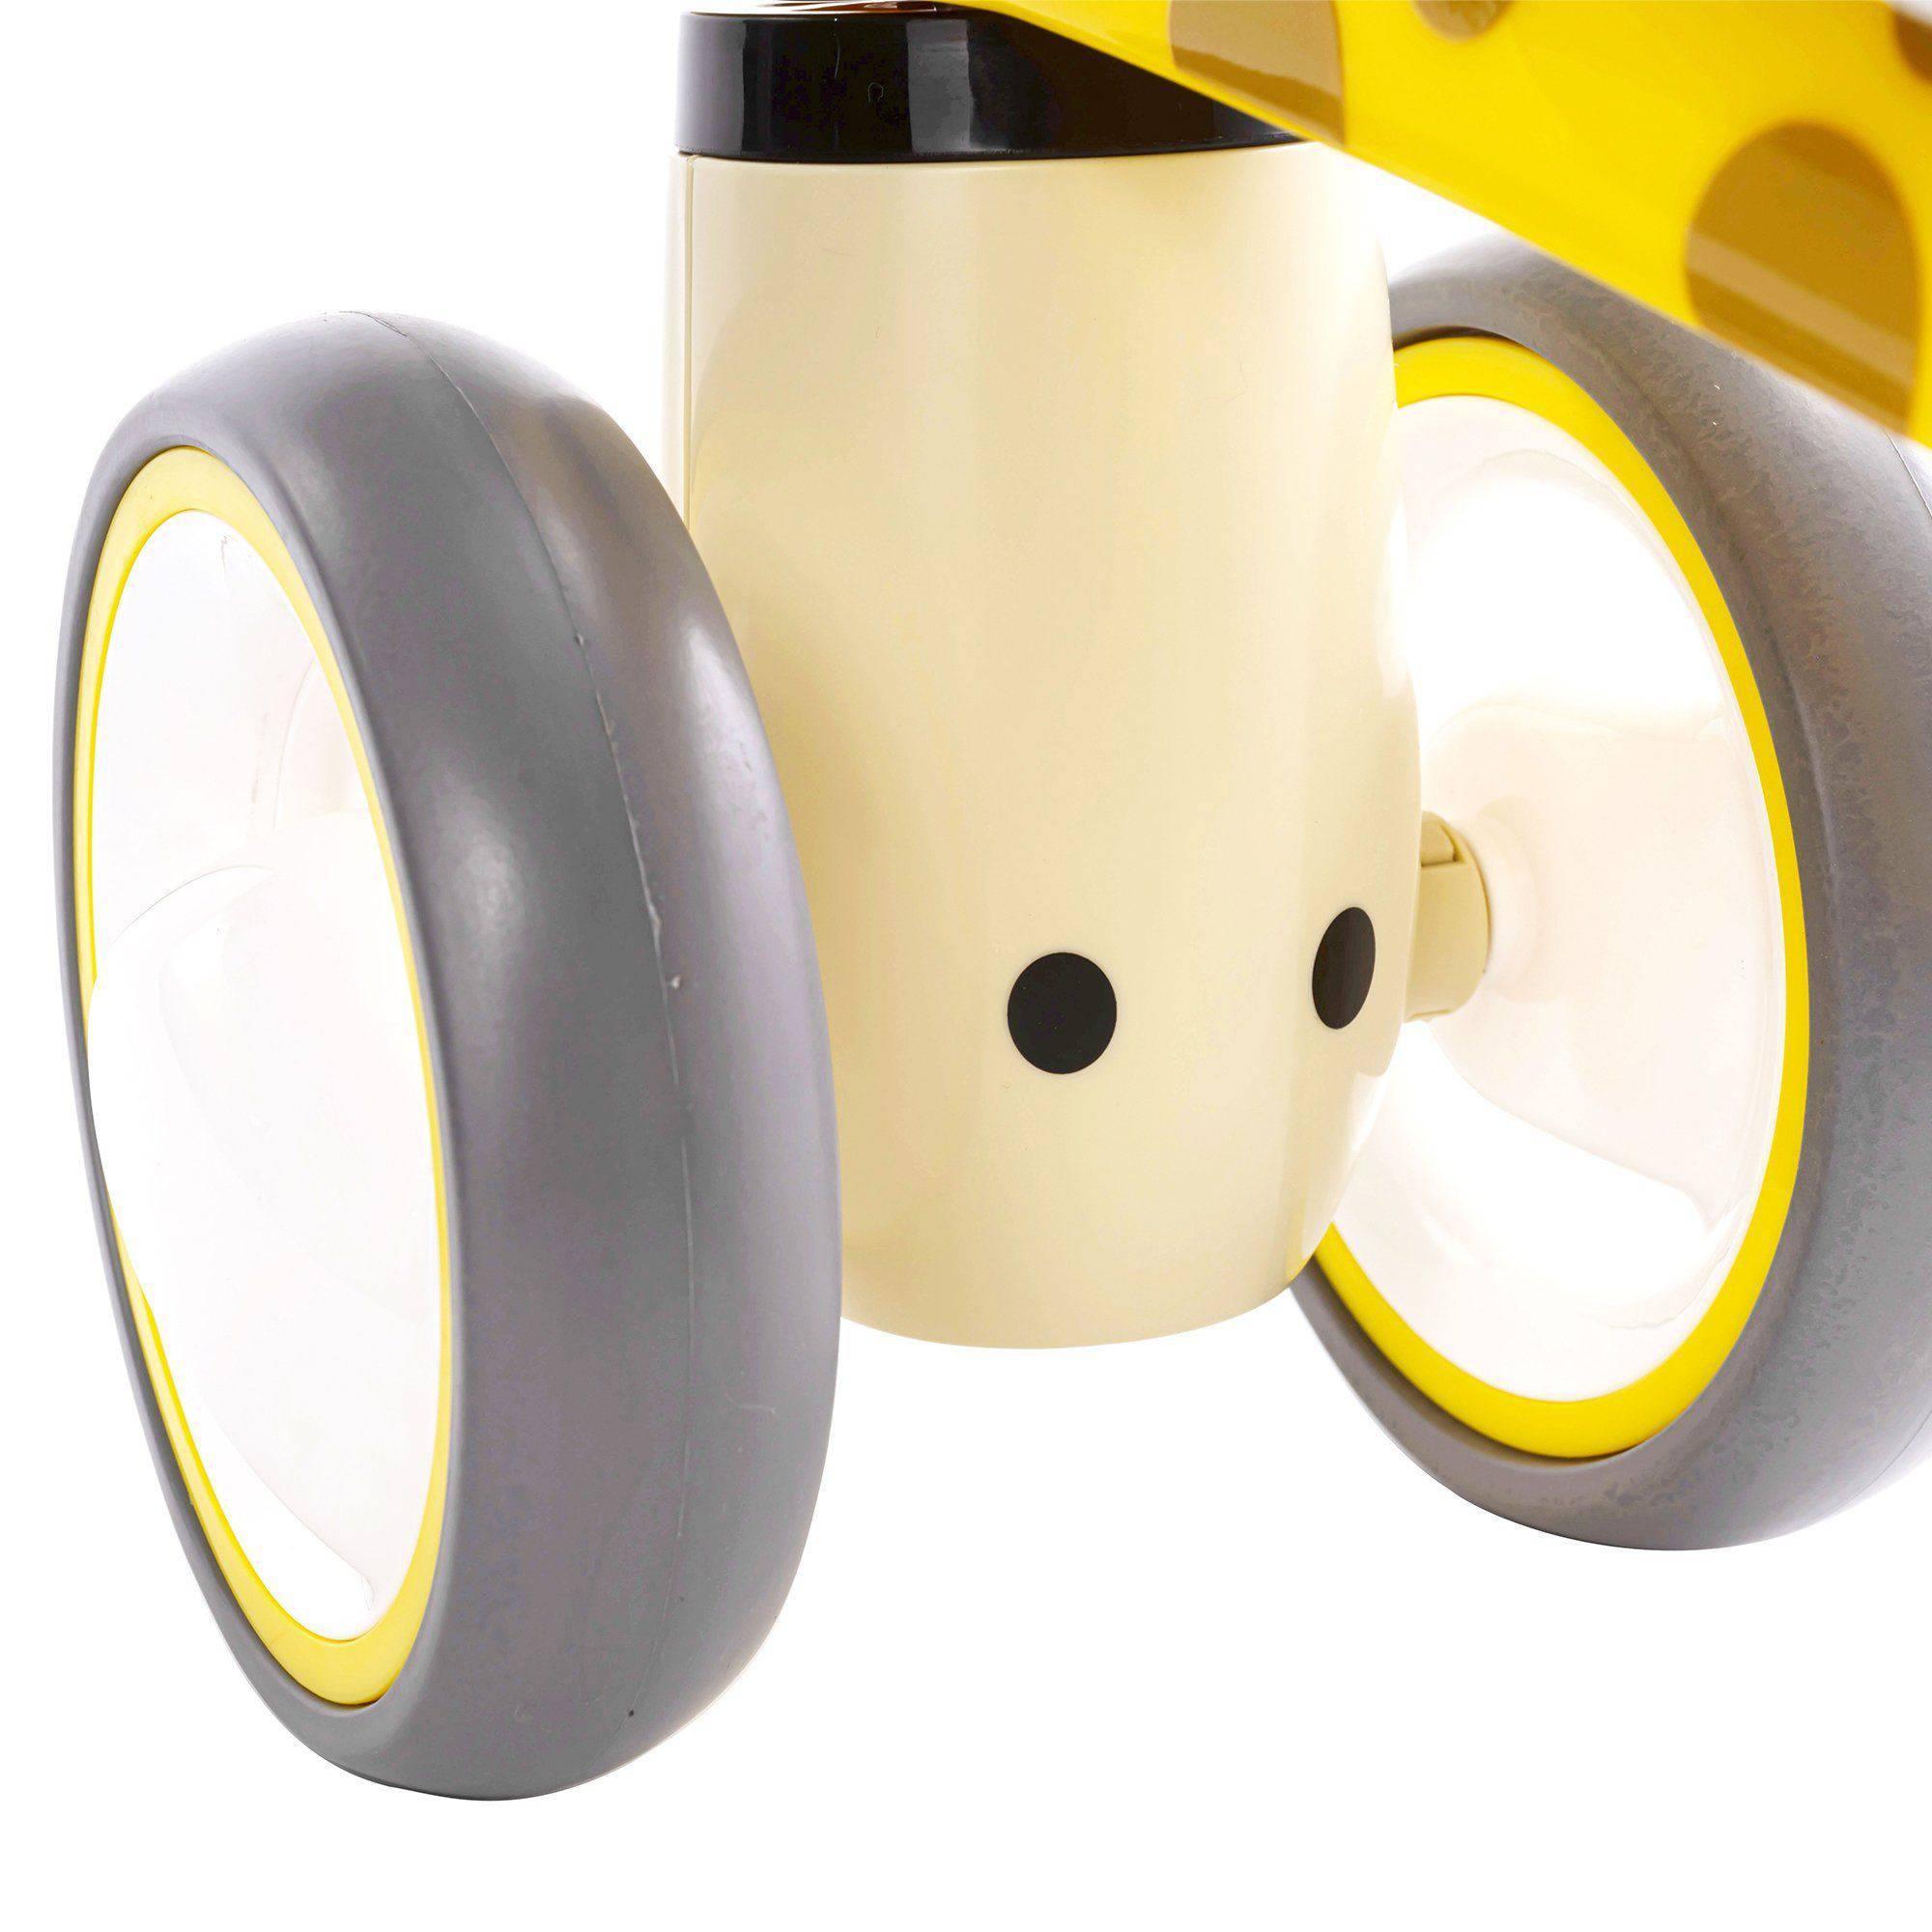 Freddo Toys 3 Wheel Balance Bike - DTI Direct USA